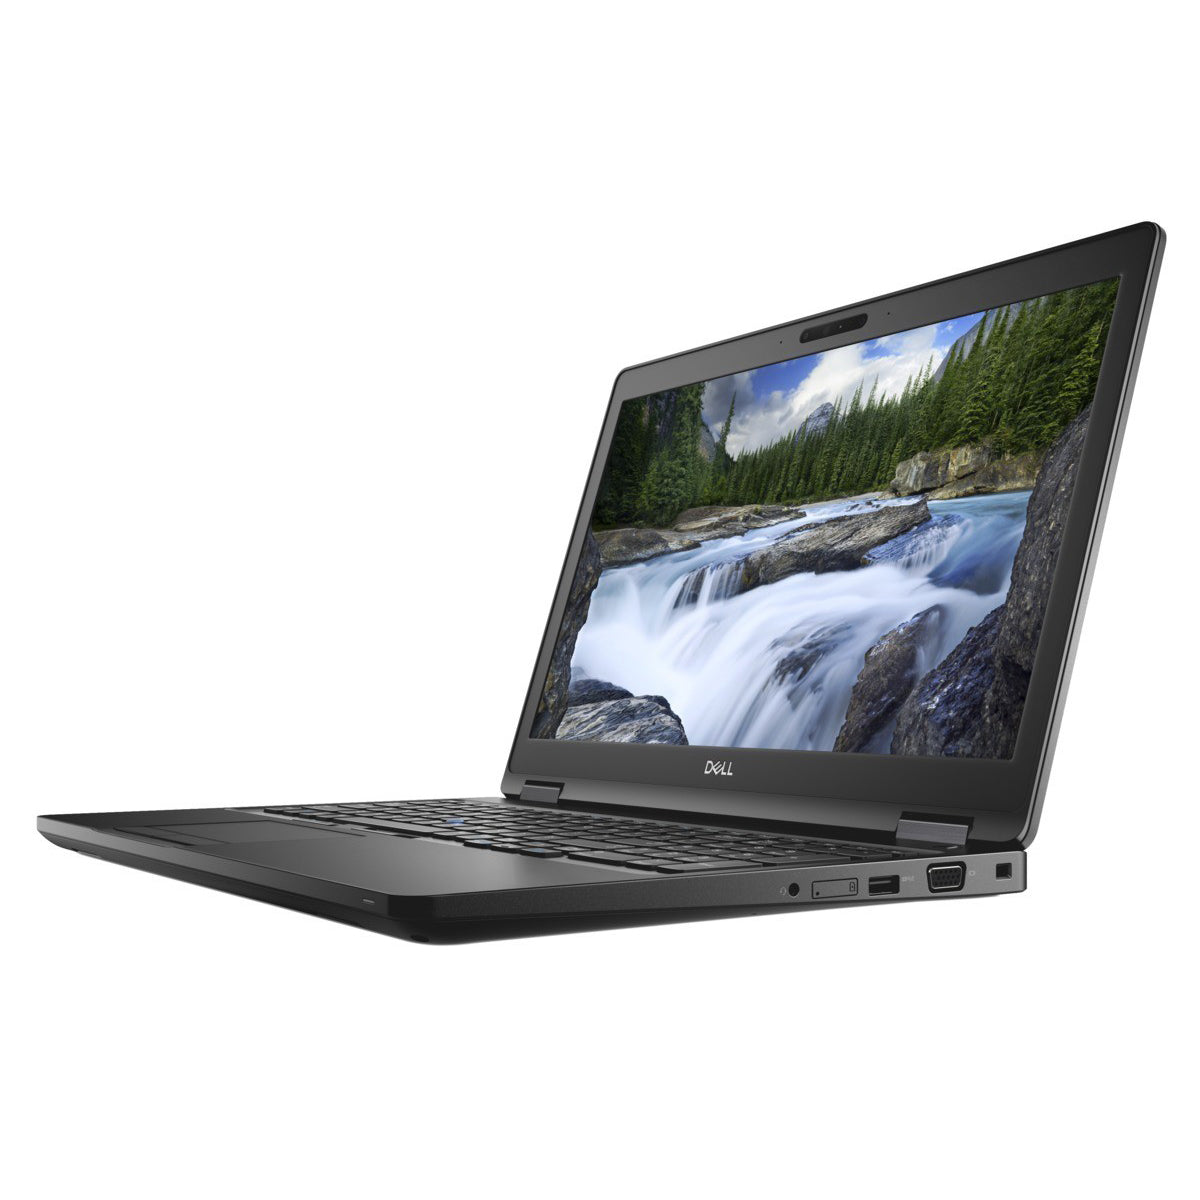 Dell Latitude 5590 Core i7-8650u VGA Nvidia MX130 2GB 15.6" Laptop Offers (Open Box)